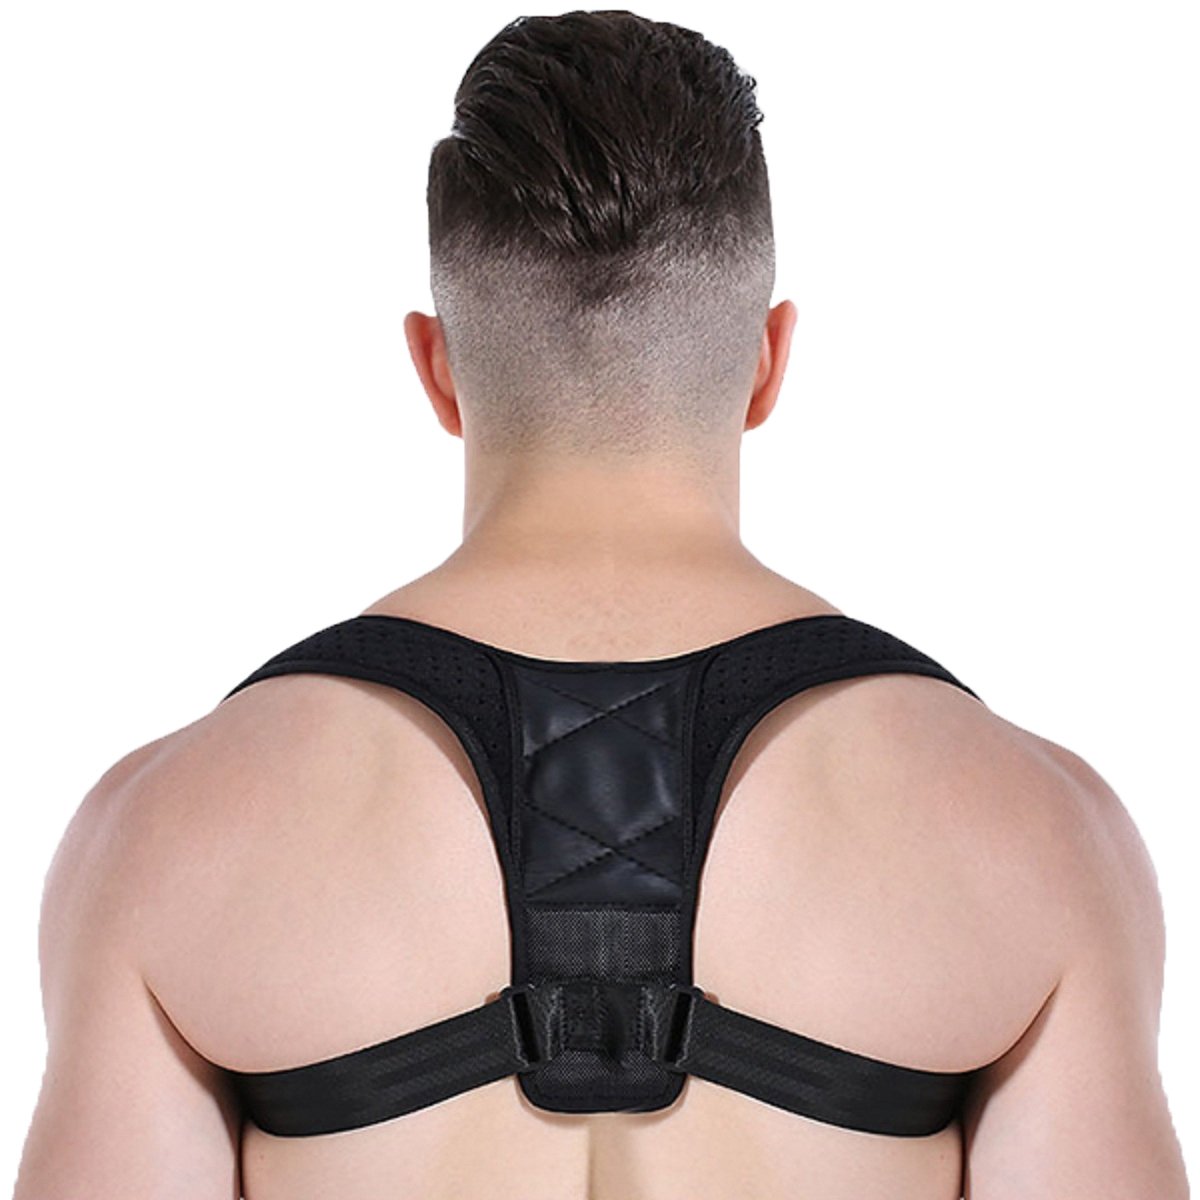 

Back Care Posture Corrector Adjustable Clavicle Brace Shoulder Support Strap for Women Men Improve S